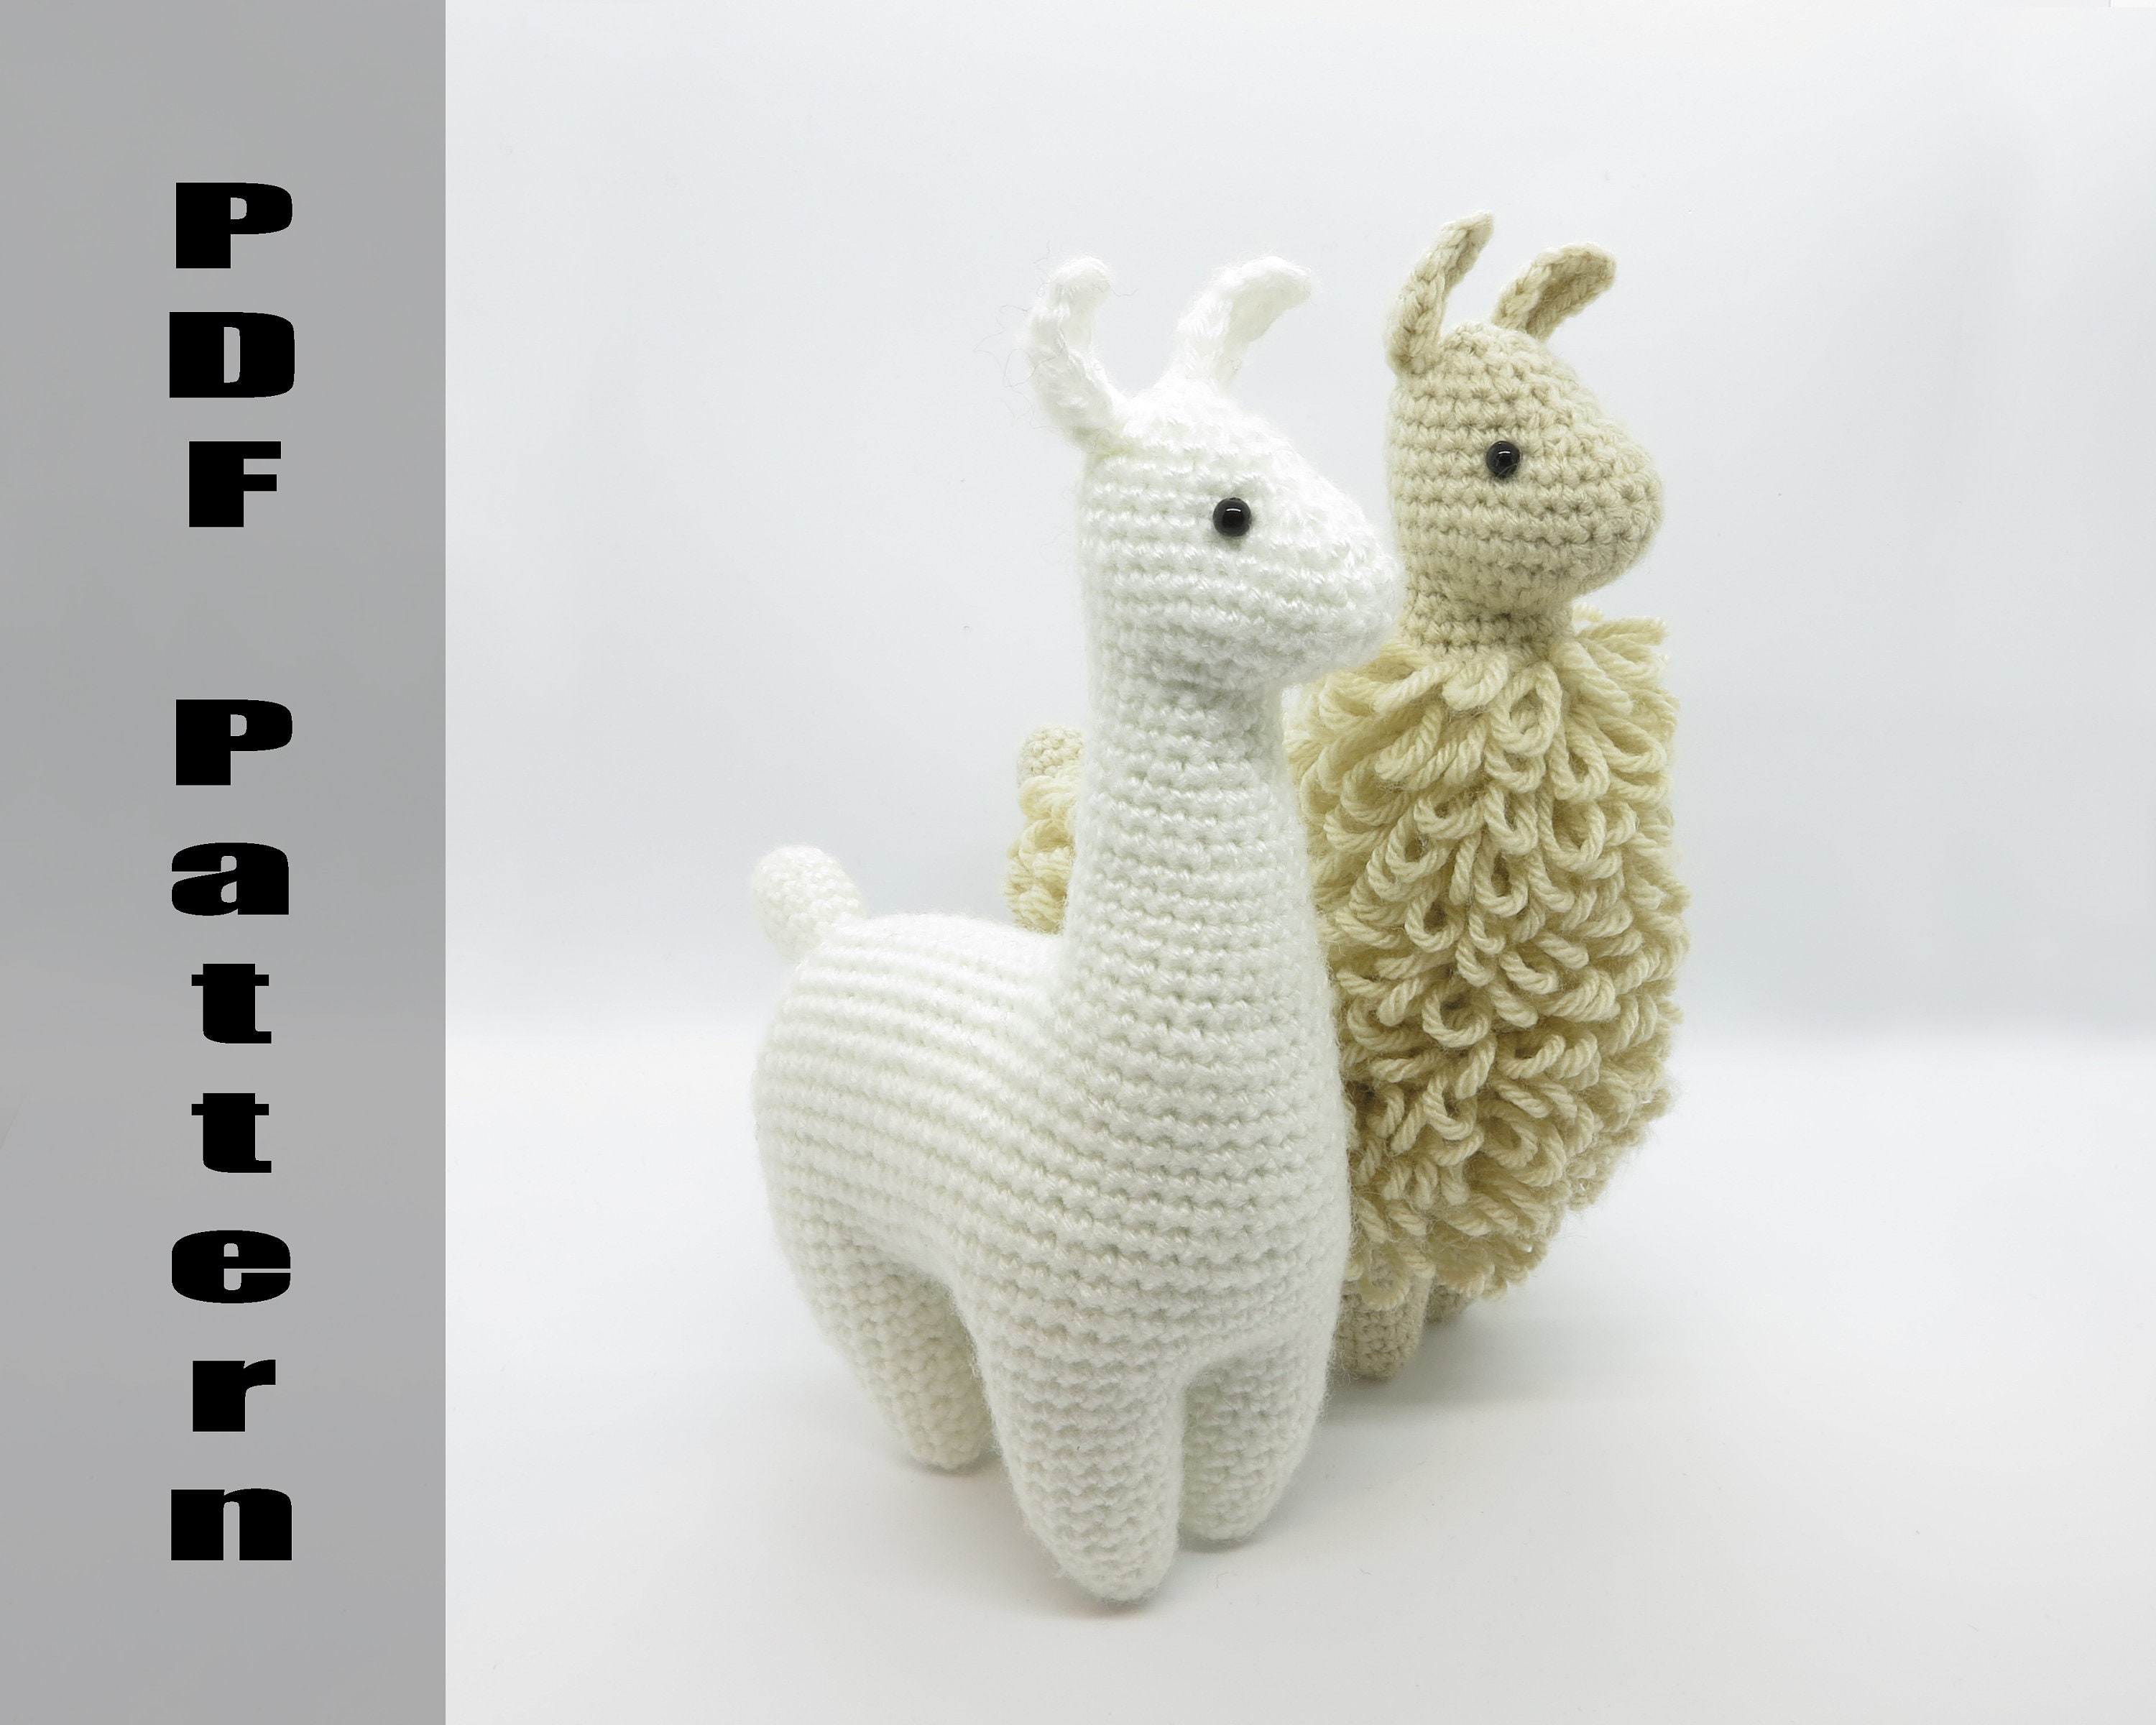 Crochet Plush Alpaca Llama Doll 8.5 Toy Knited Soft Plush Hand Amigurumi